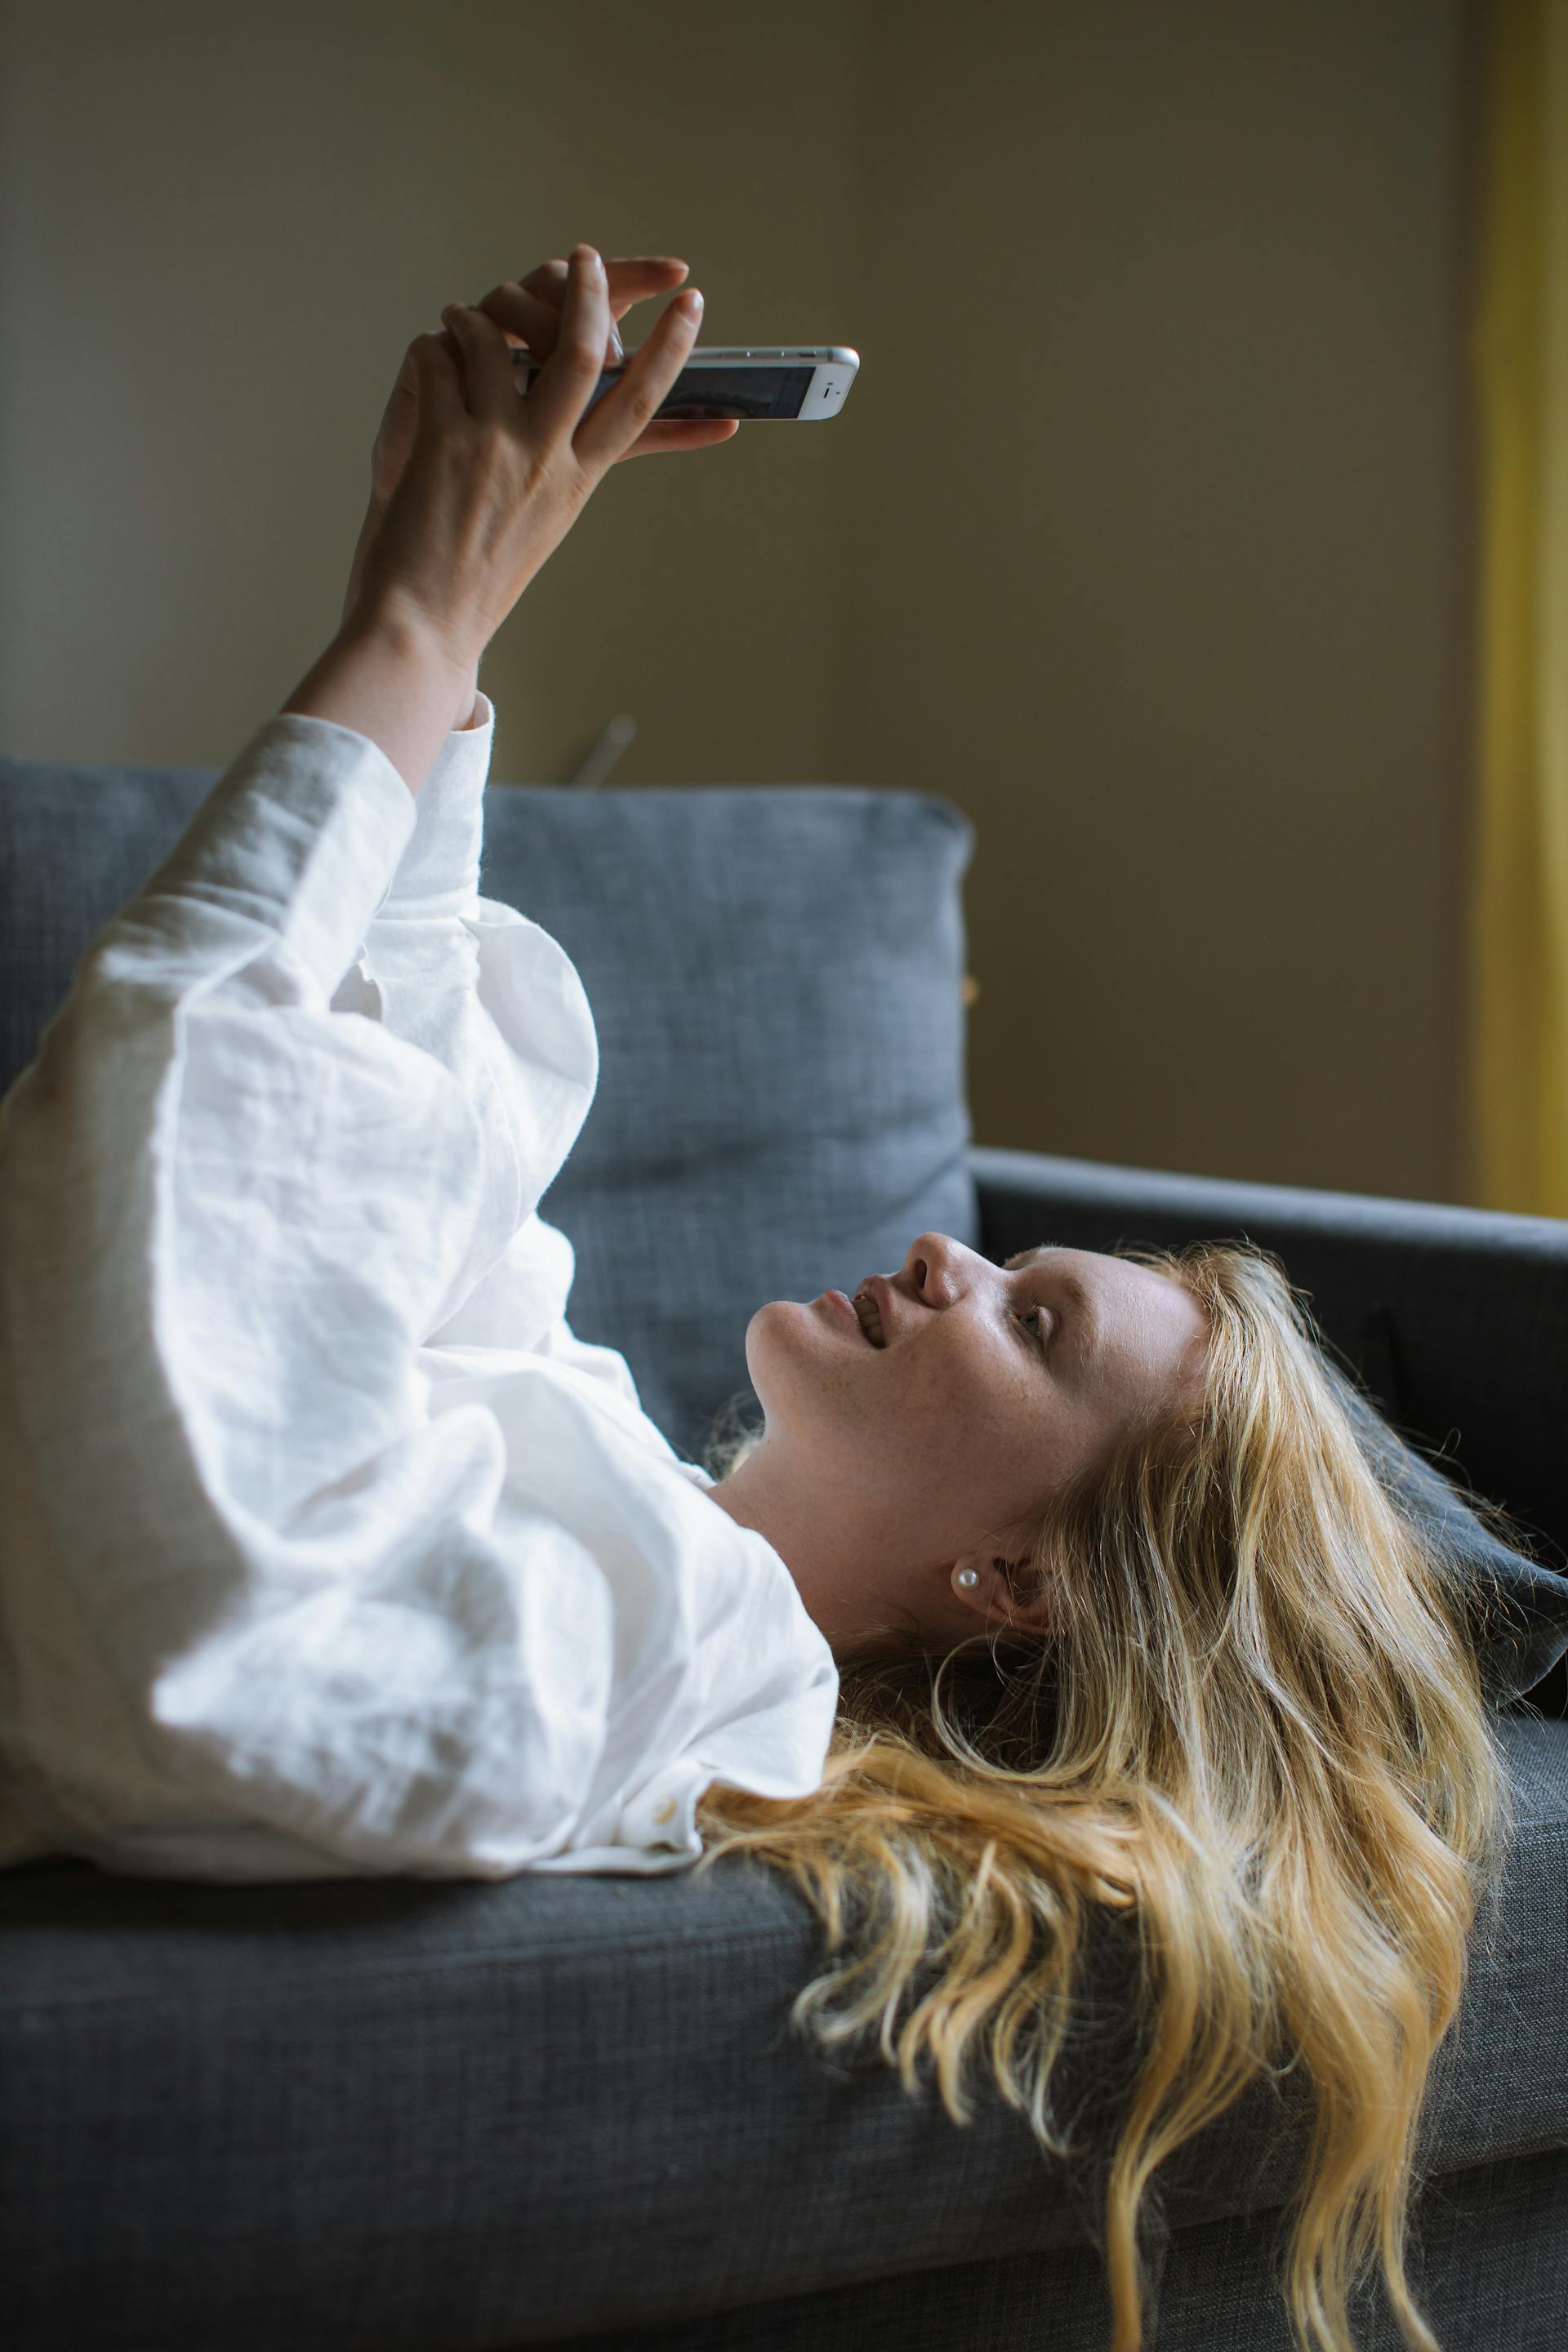 Una joven utilizando su teléfono mientras está tumbada en un sofá | Fuente: Pexels